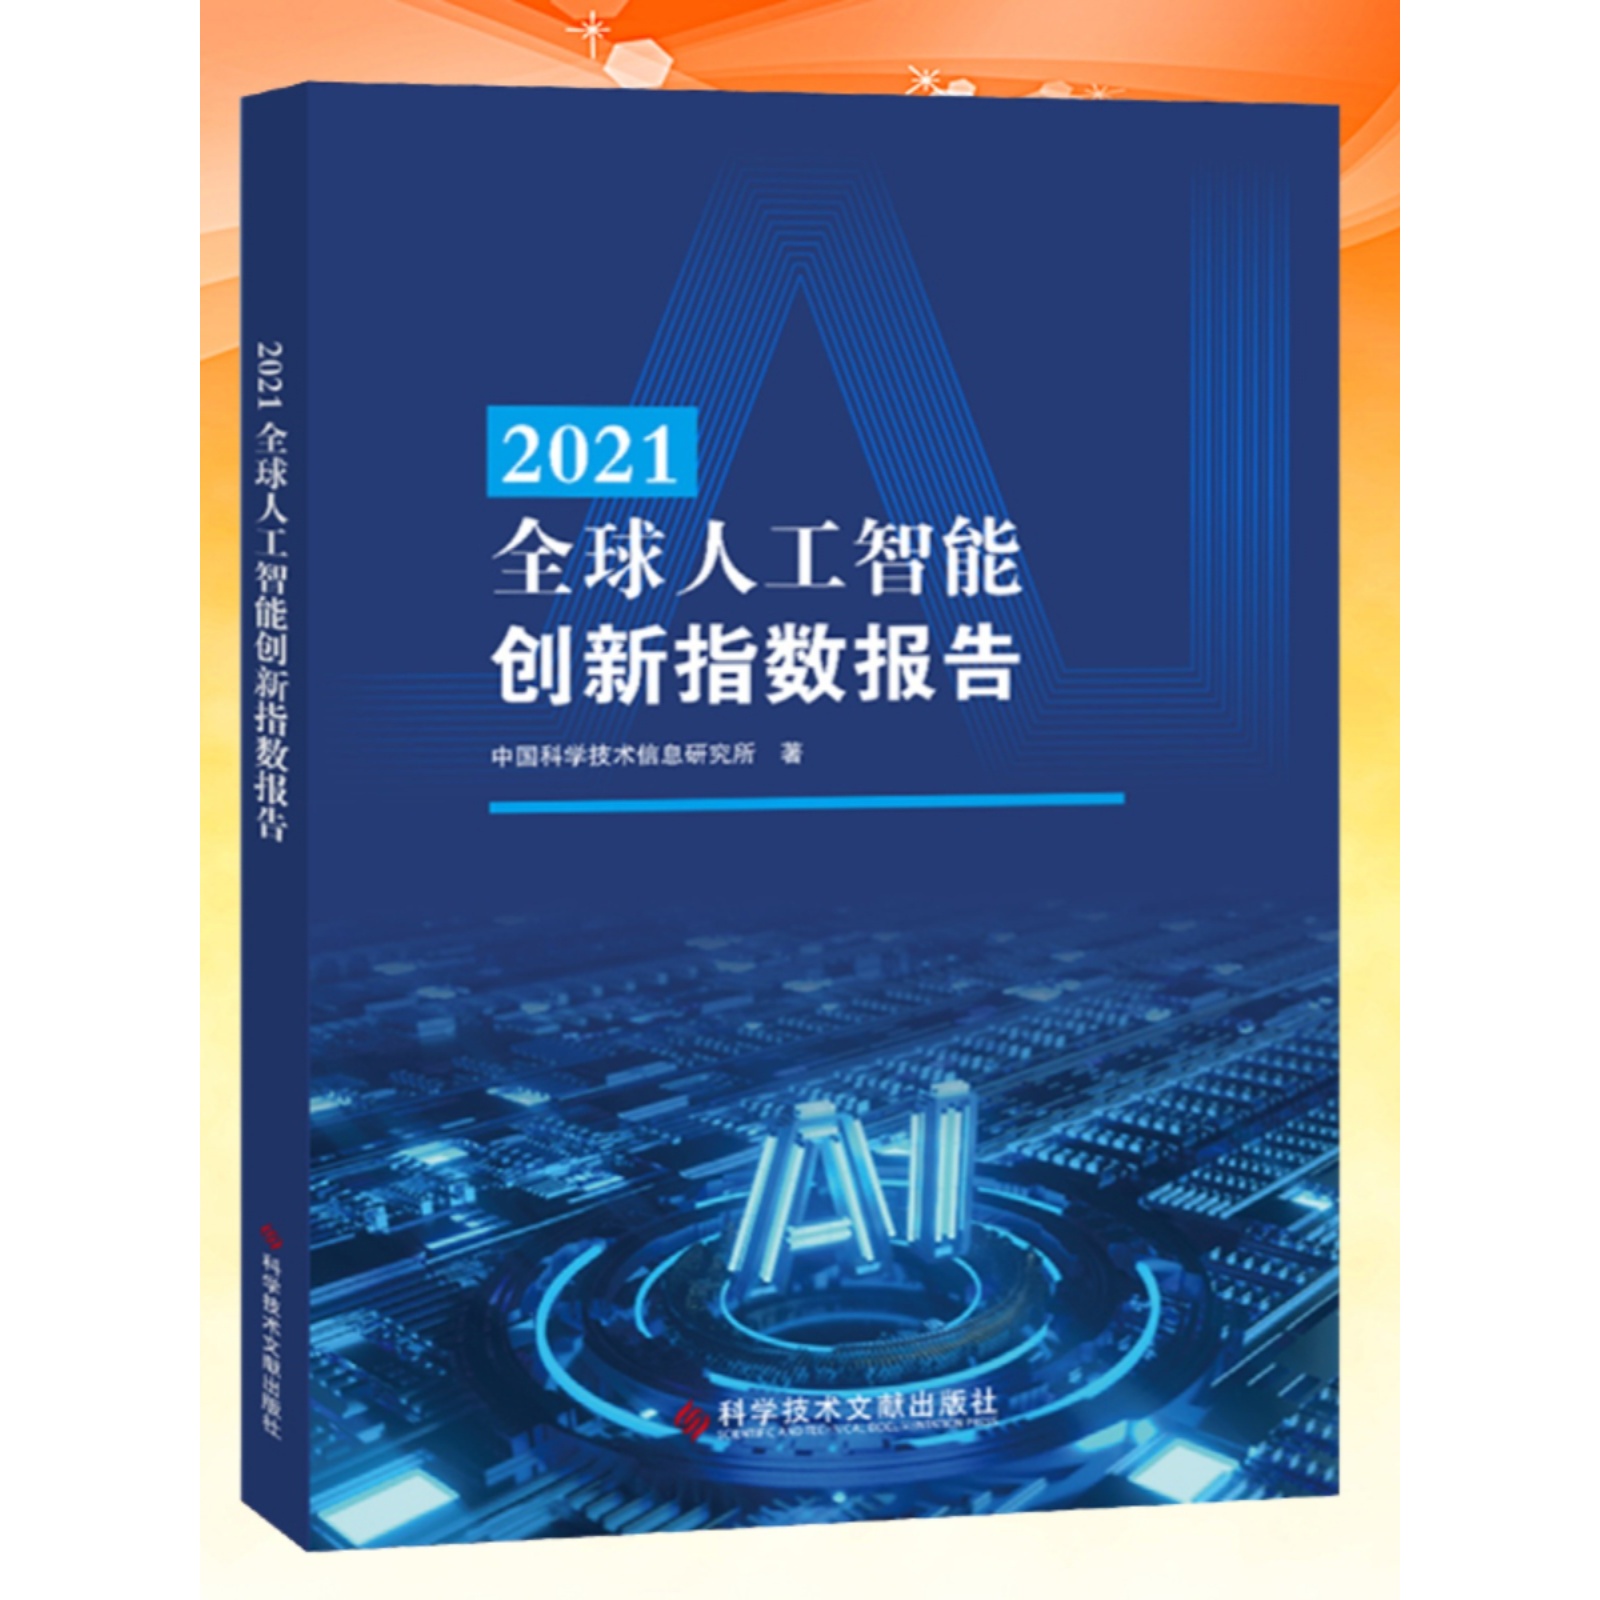 全新正版 2021全球人工智能创新指数报告 中国科学技术信息研究所 人工智能技术发展研究报告 书籍 科学技 术文献出版社